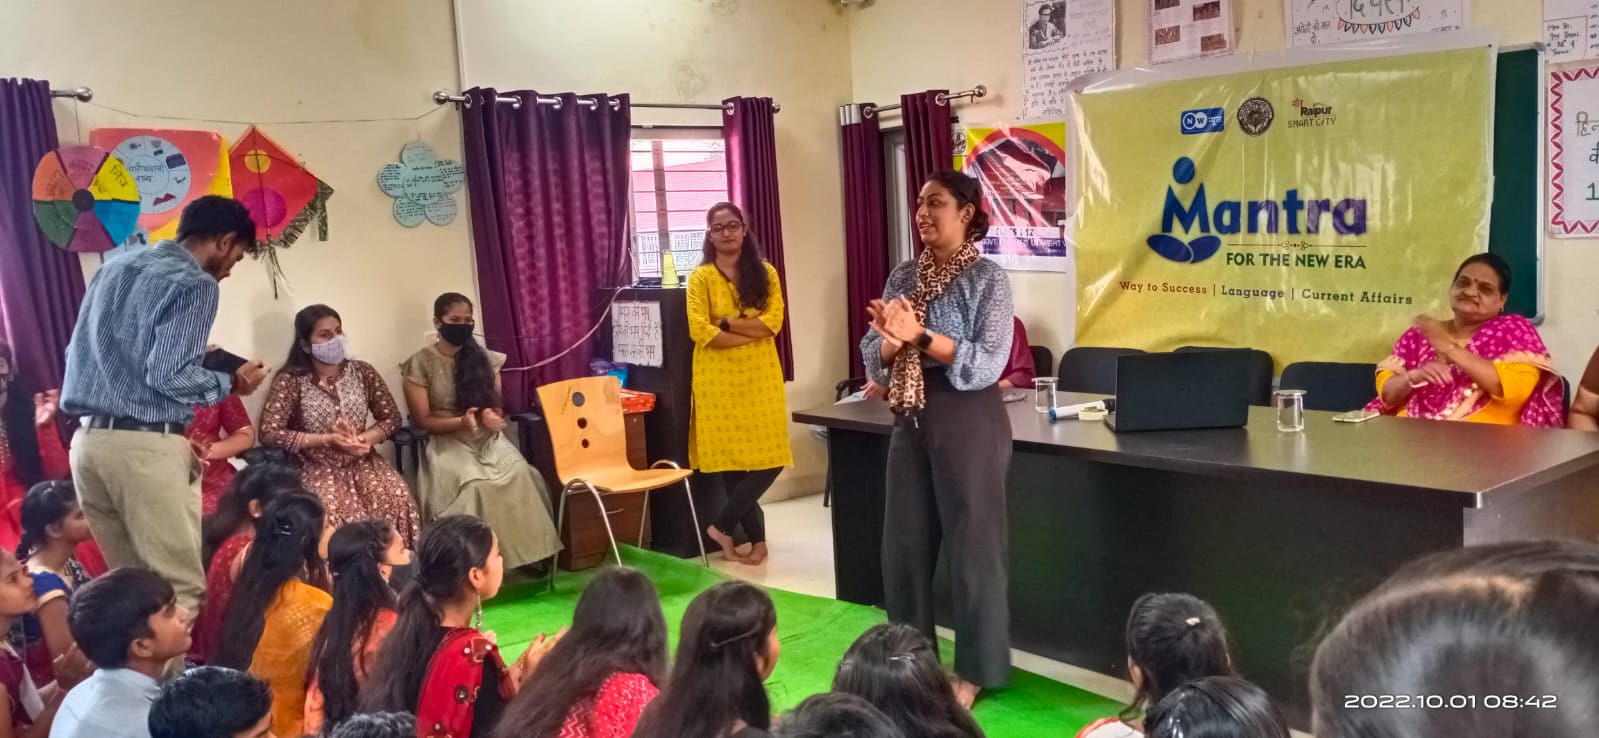  रायपुर स्मार्ट सिटी के ‘‘मंत्र’’ से स्कूली बच्चे तराशेंगे अपना कैरियर